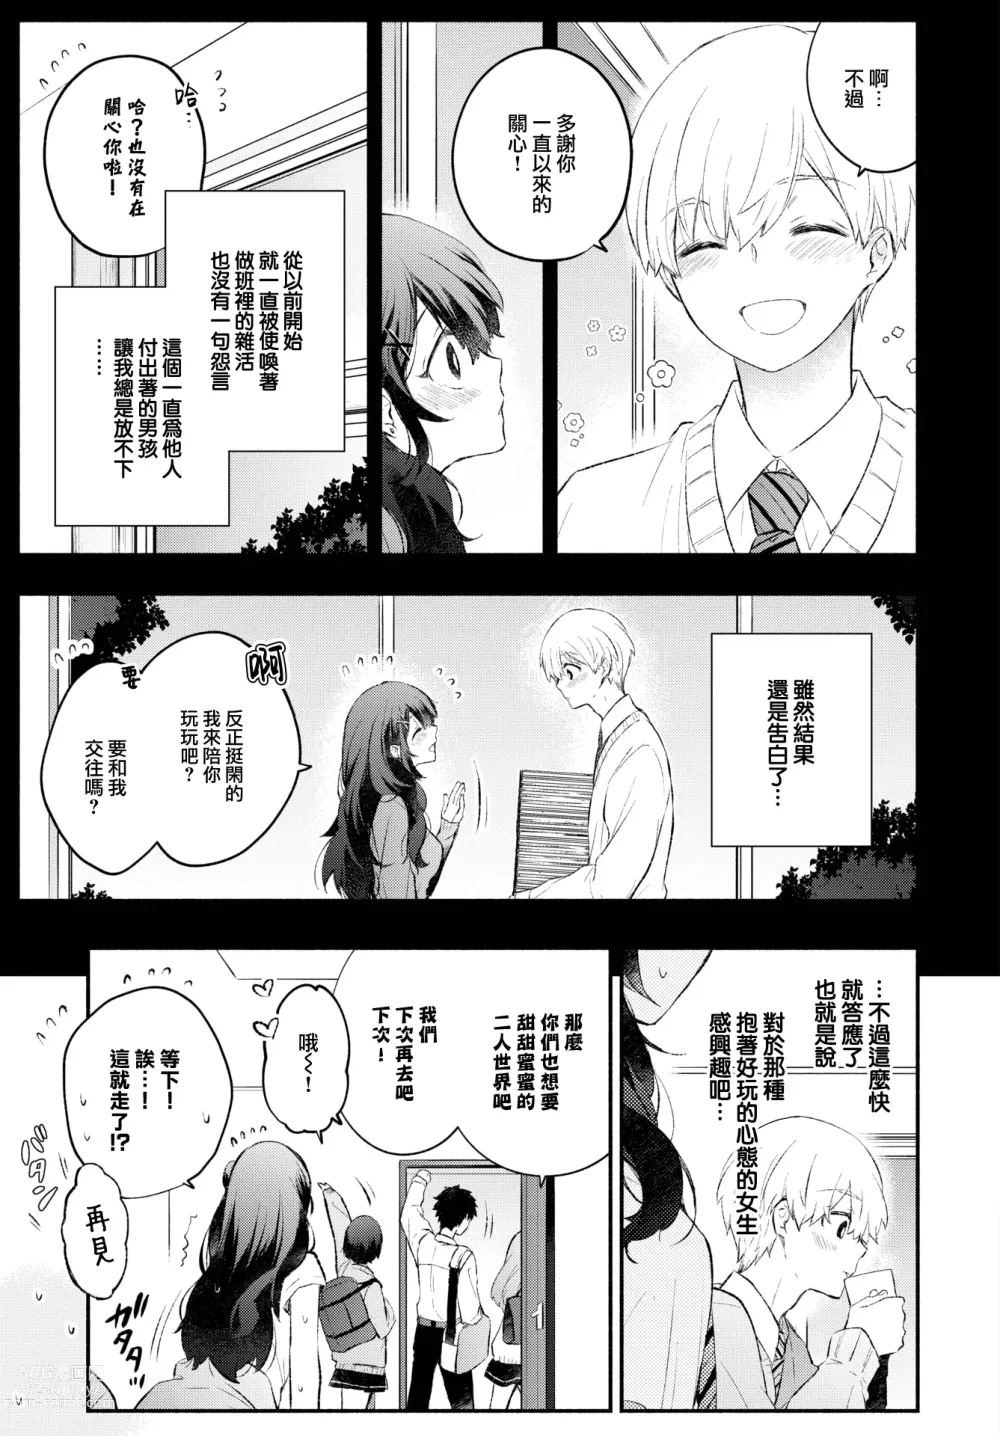 Page 4 of manga Usotsuki Kanojo